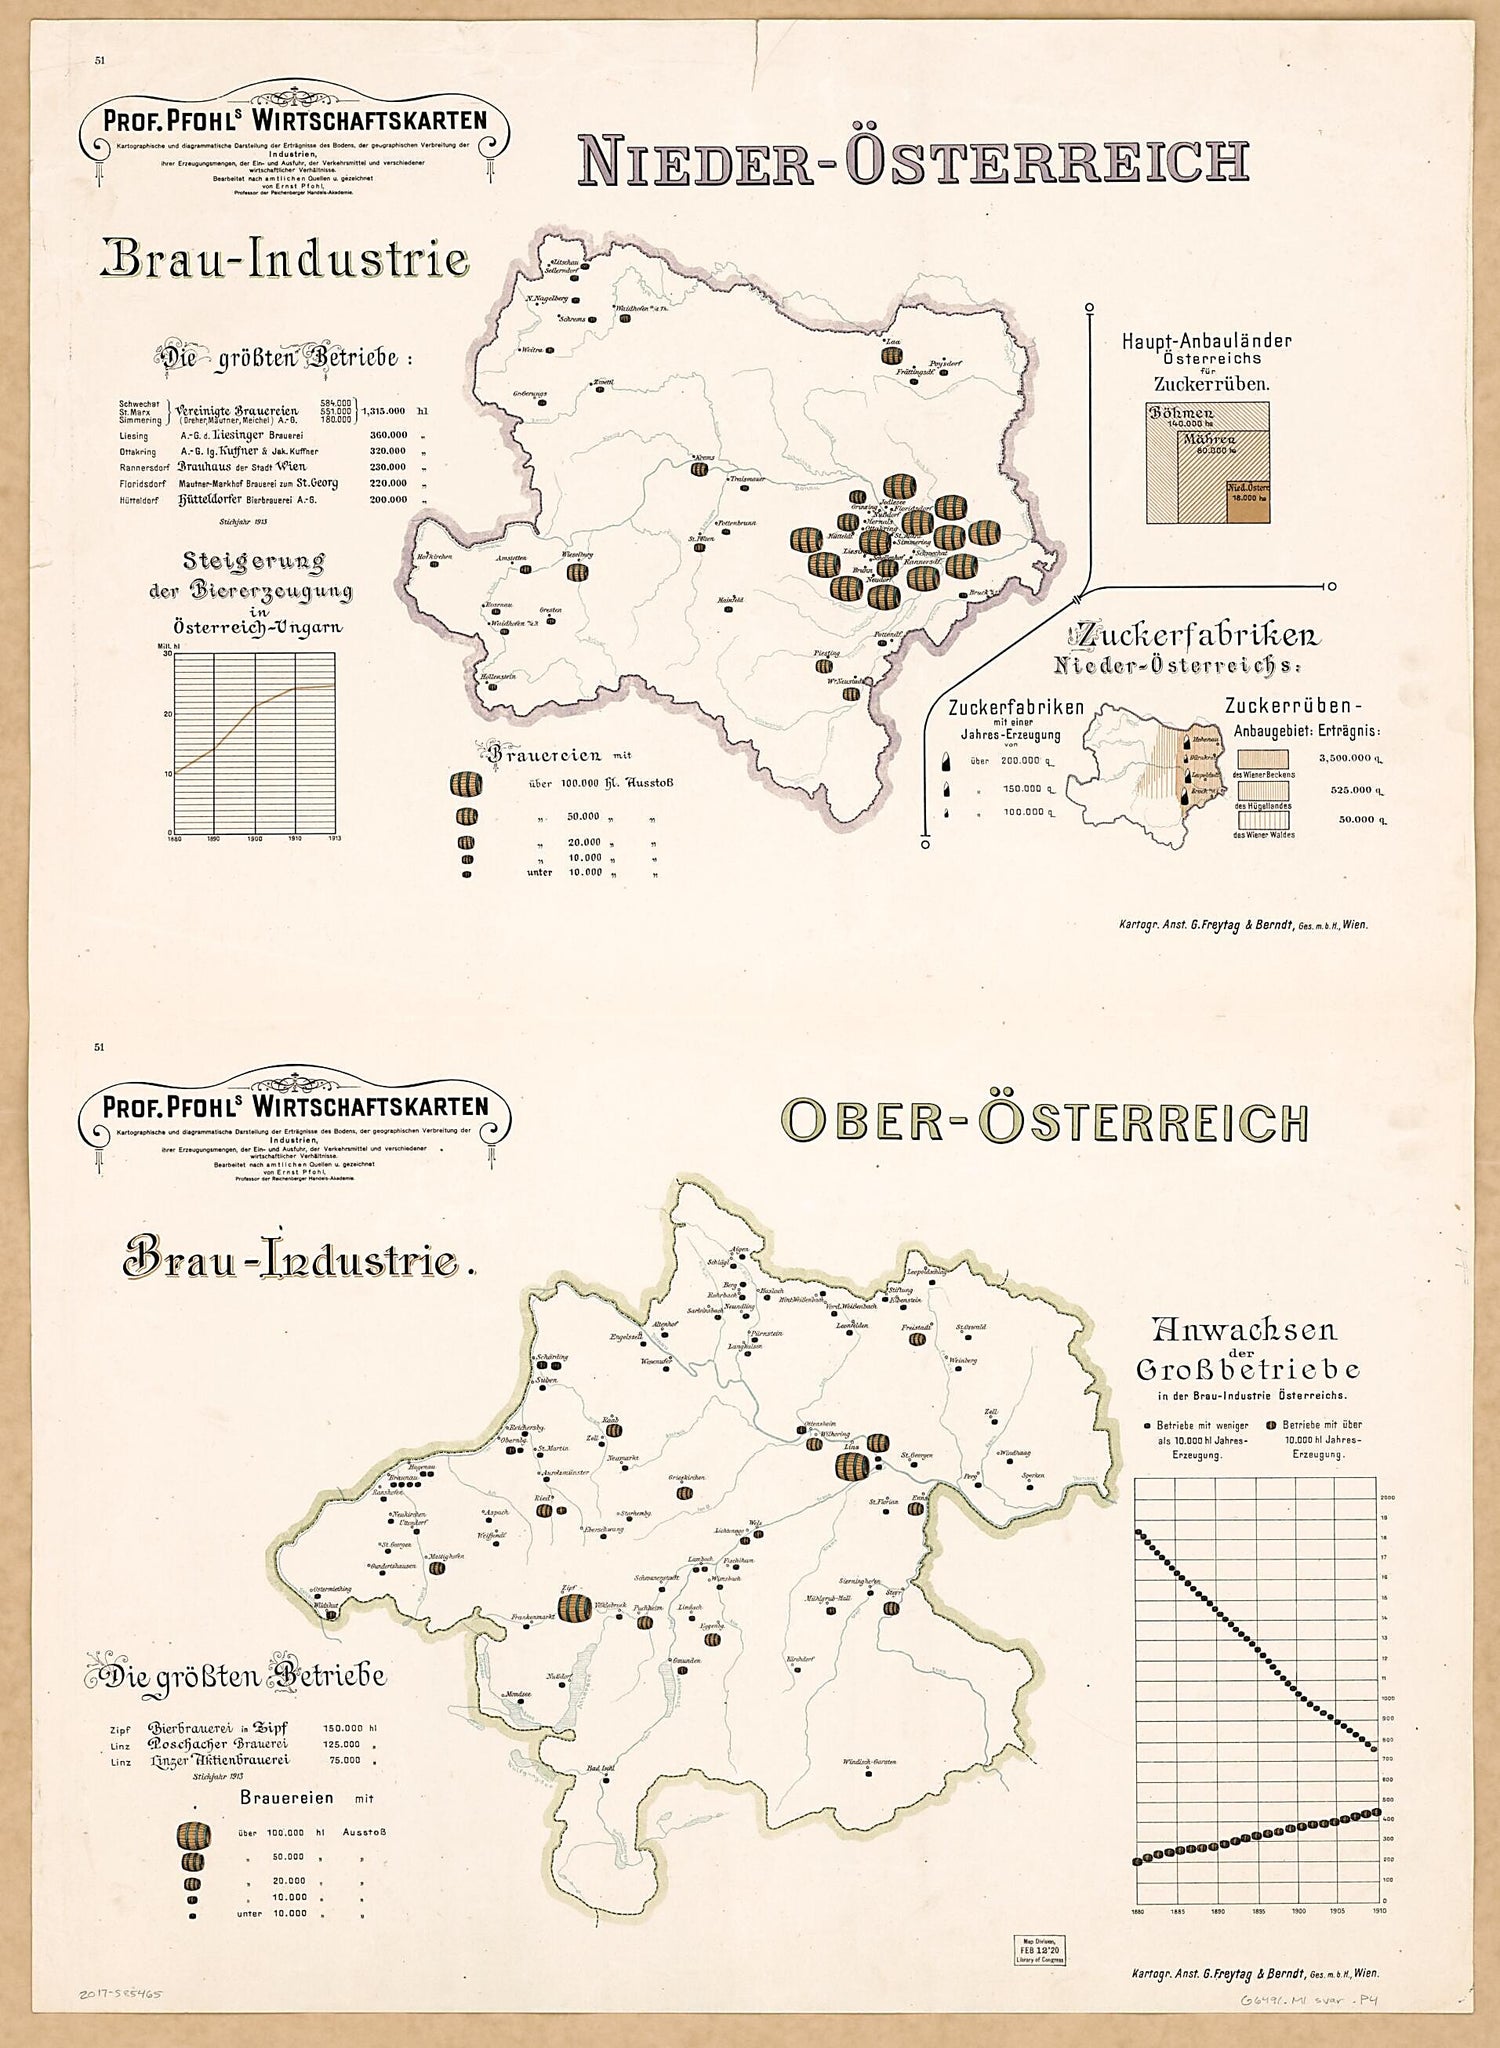 This old map of Nieder-Osterrreich Brau-Industrie; Ober Osterrreich Brau-Industrie from Prof. Pfohls Wirtschaftskarten from 1913 was created by Ernst Pfohl in 1913